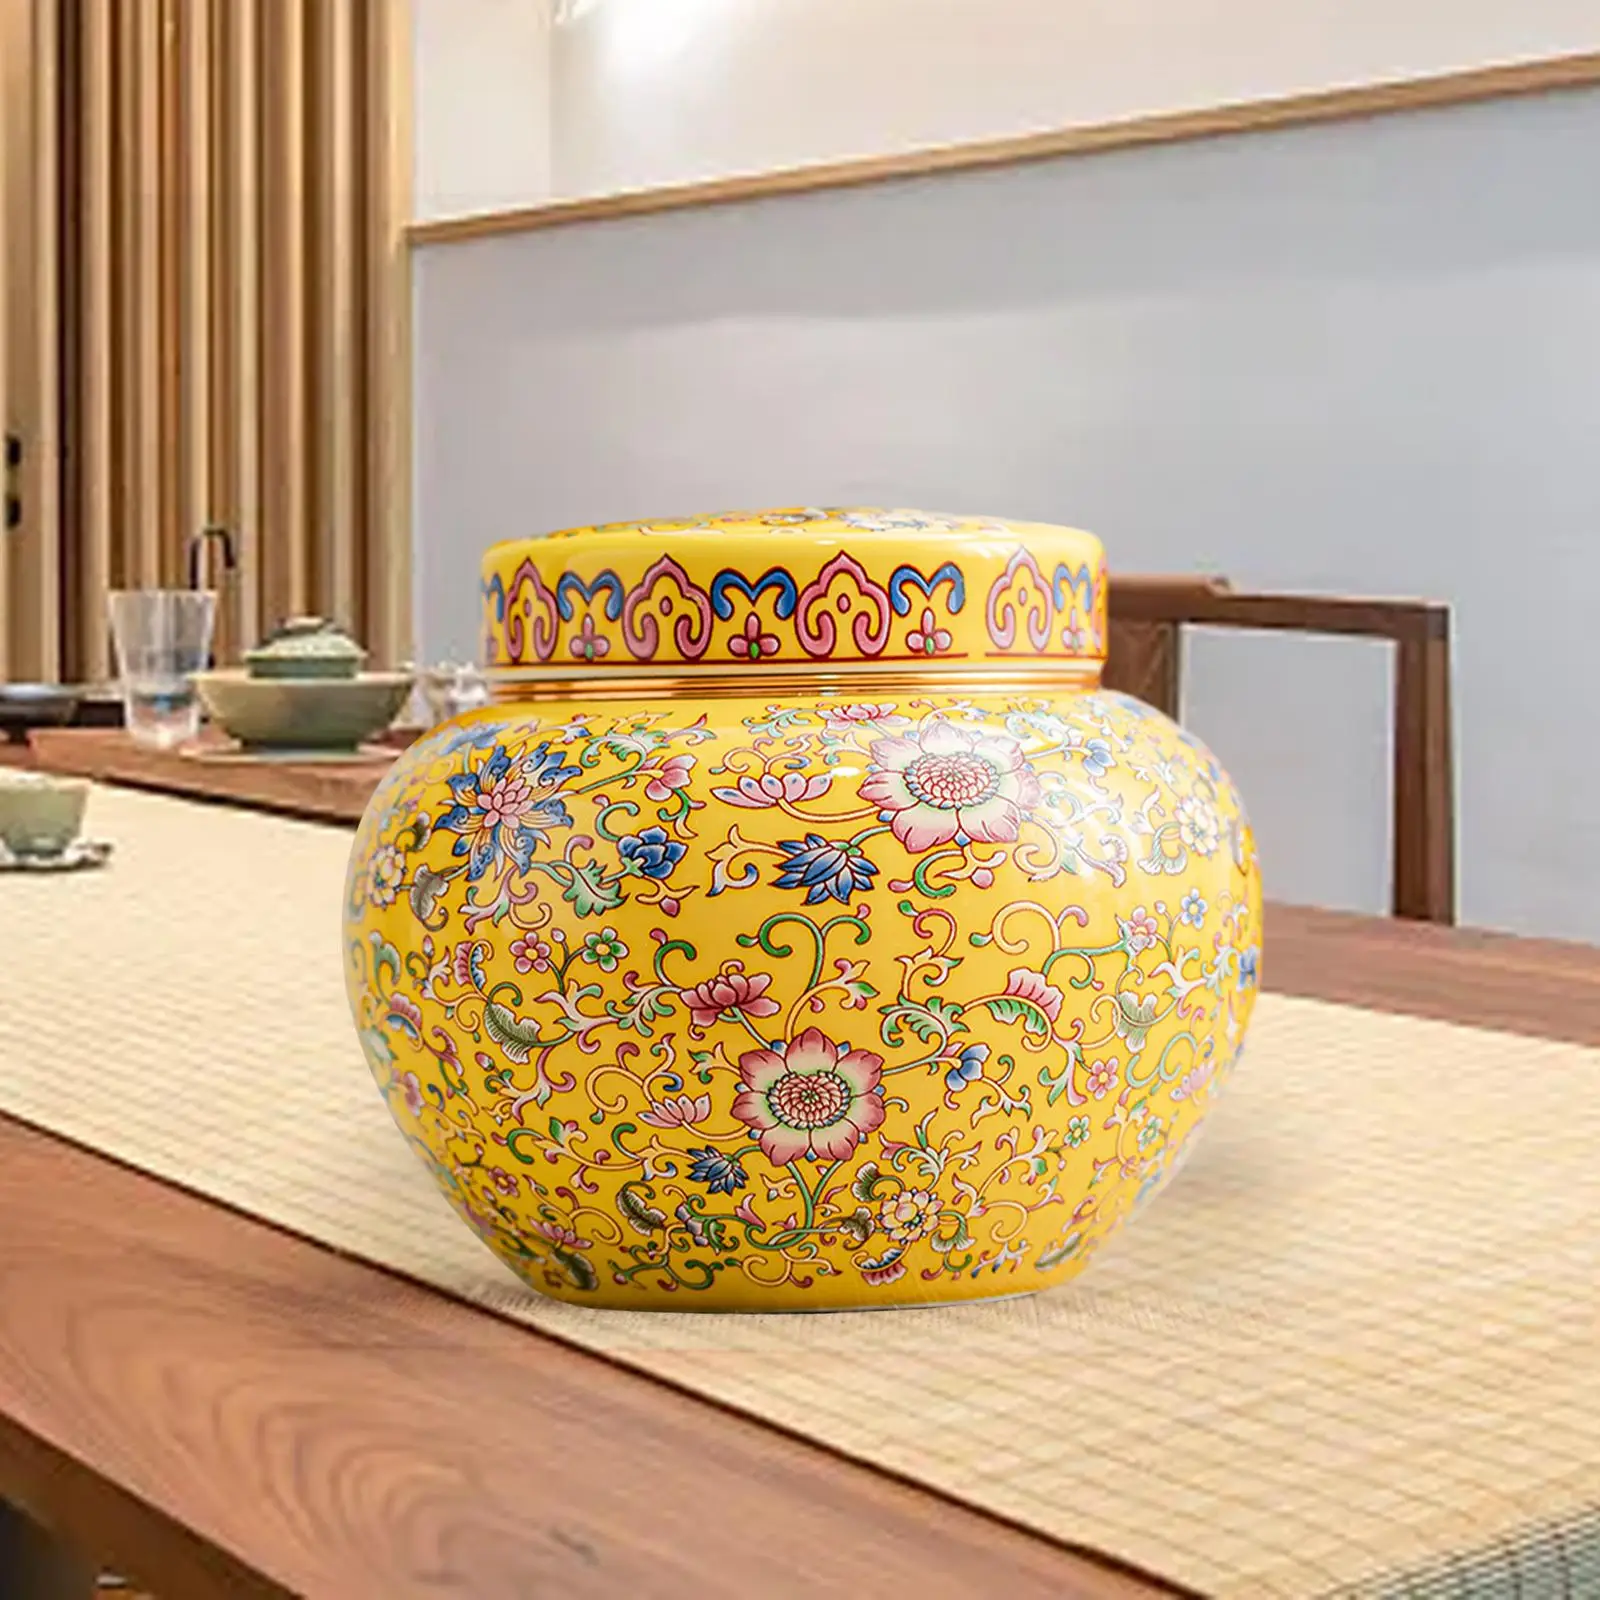 Floral Temple Jar with Lid Desktop Ginger Jar for Weddings Bedroom Kitchen